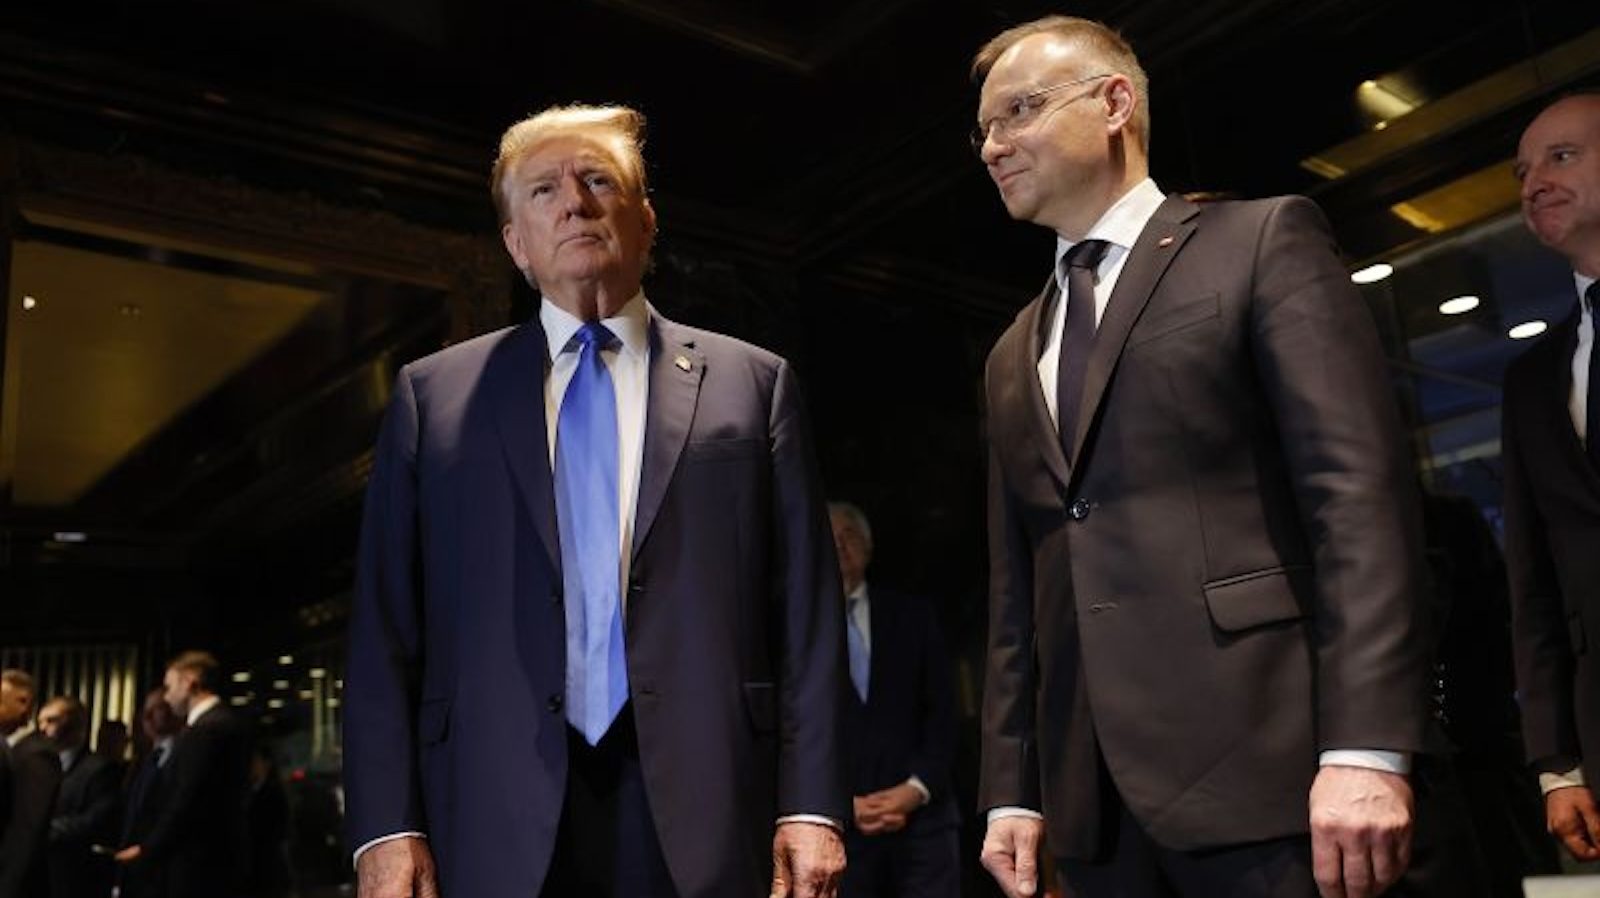 Trump i prezydent Polski rozmawiają o zwiększeniu wydatków na obronność państw członkowskich NATO